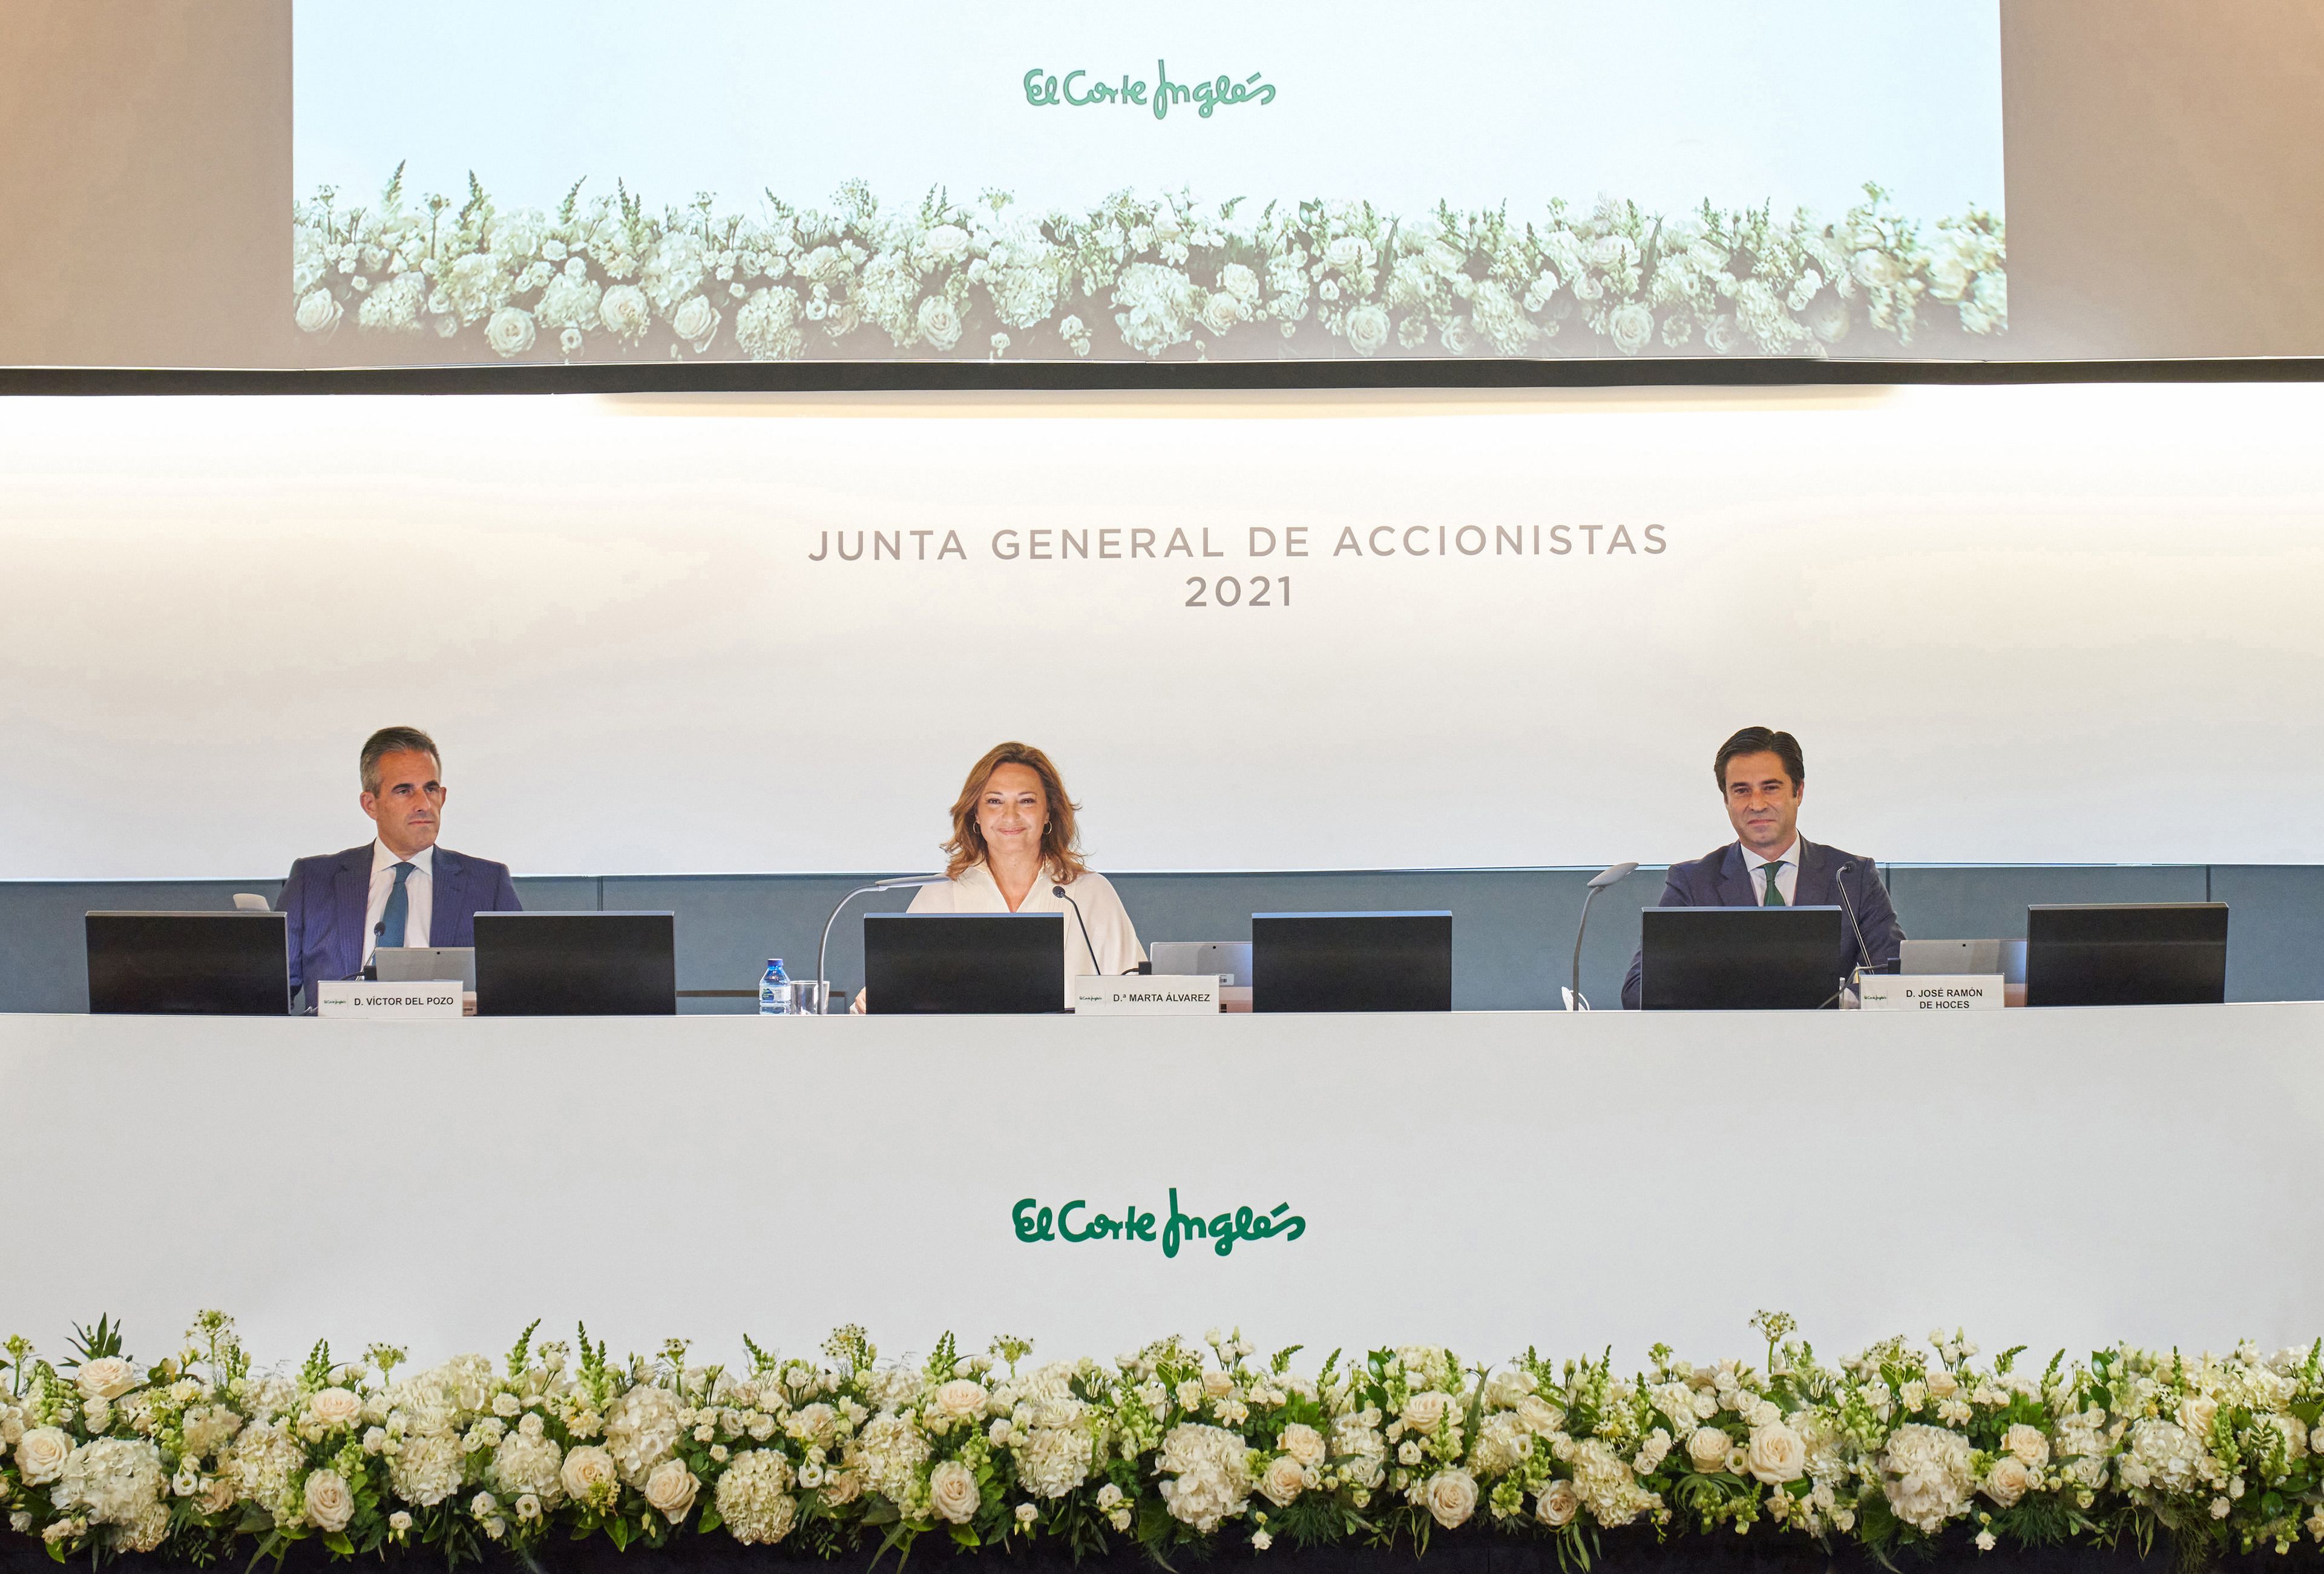 De izquierda a derecha, los directivos de El Corte Inglés Víctor del Pozo, consejero delegado, Marta Álvarez, presidenta, y José Ramón de Hoces, consejero secretario.